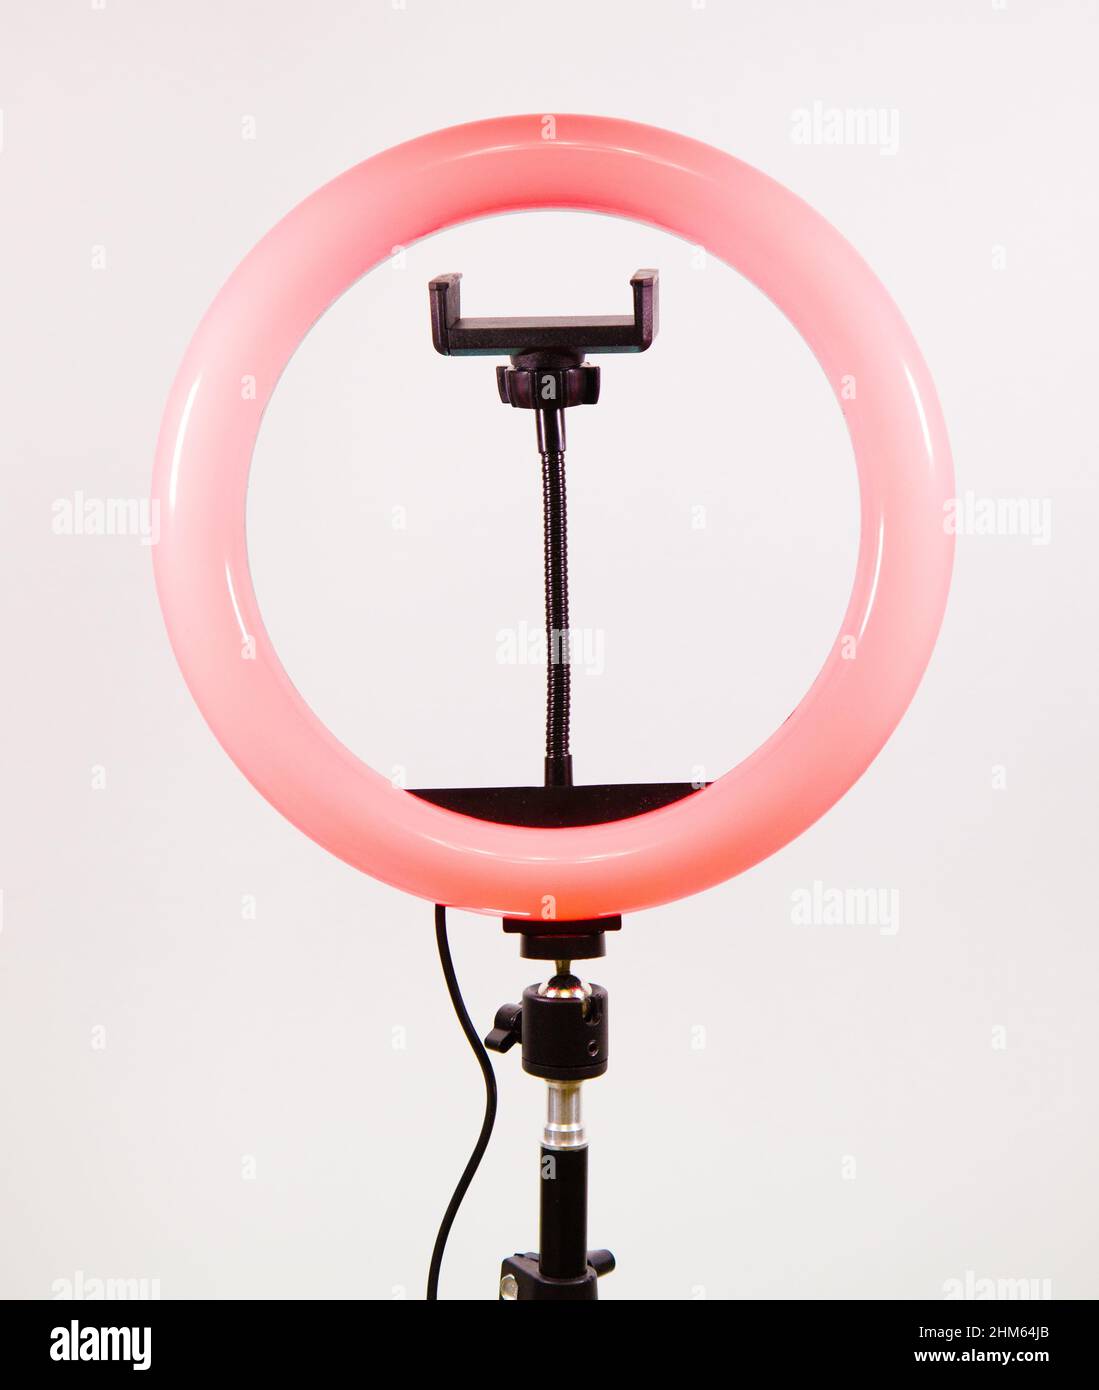 Runde Lampe mit Smartphone-Halterung. Rotes Licht. Stockfoto